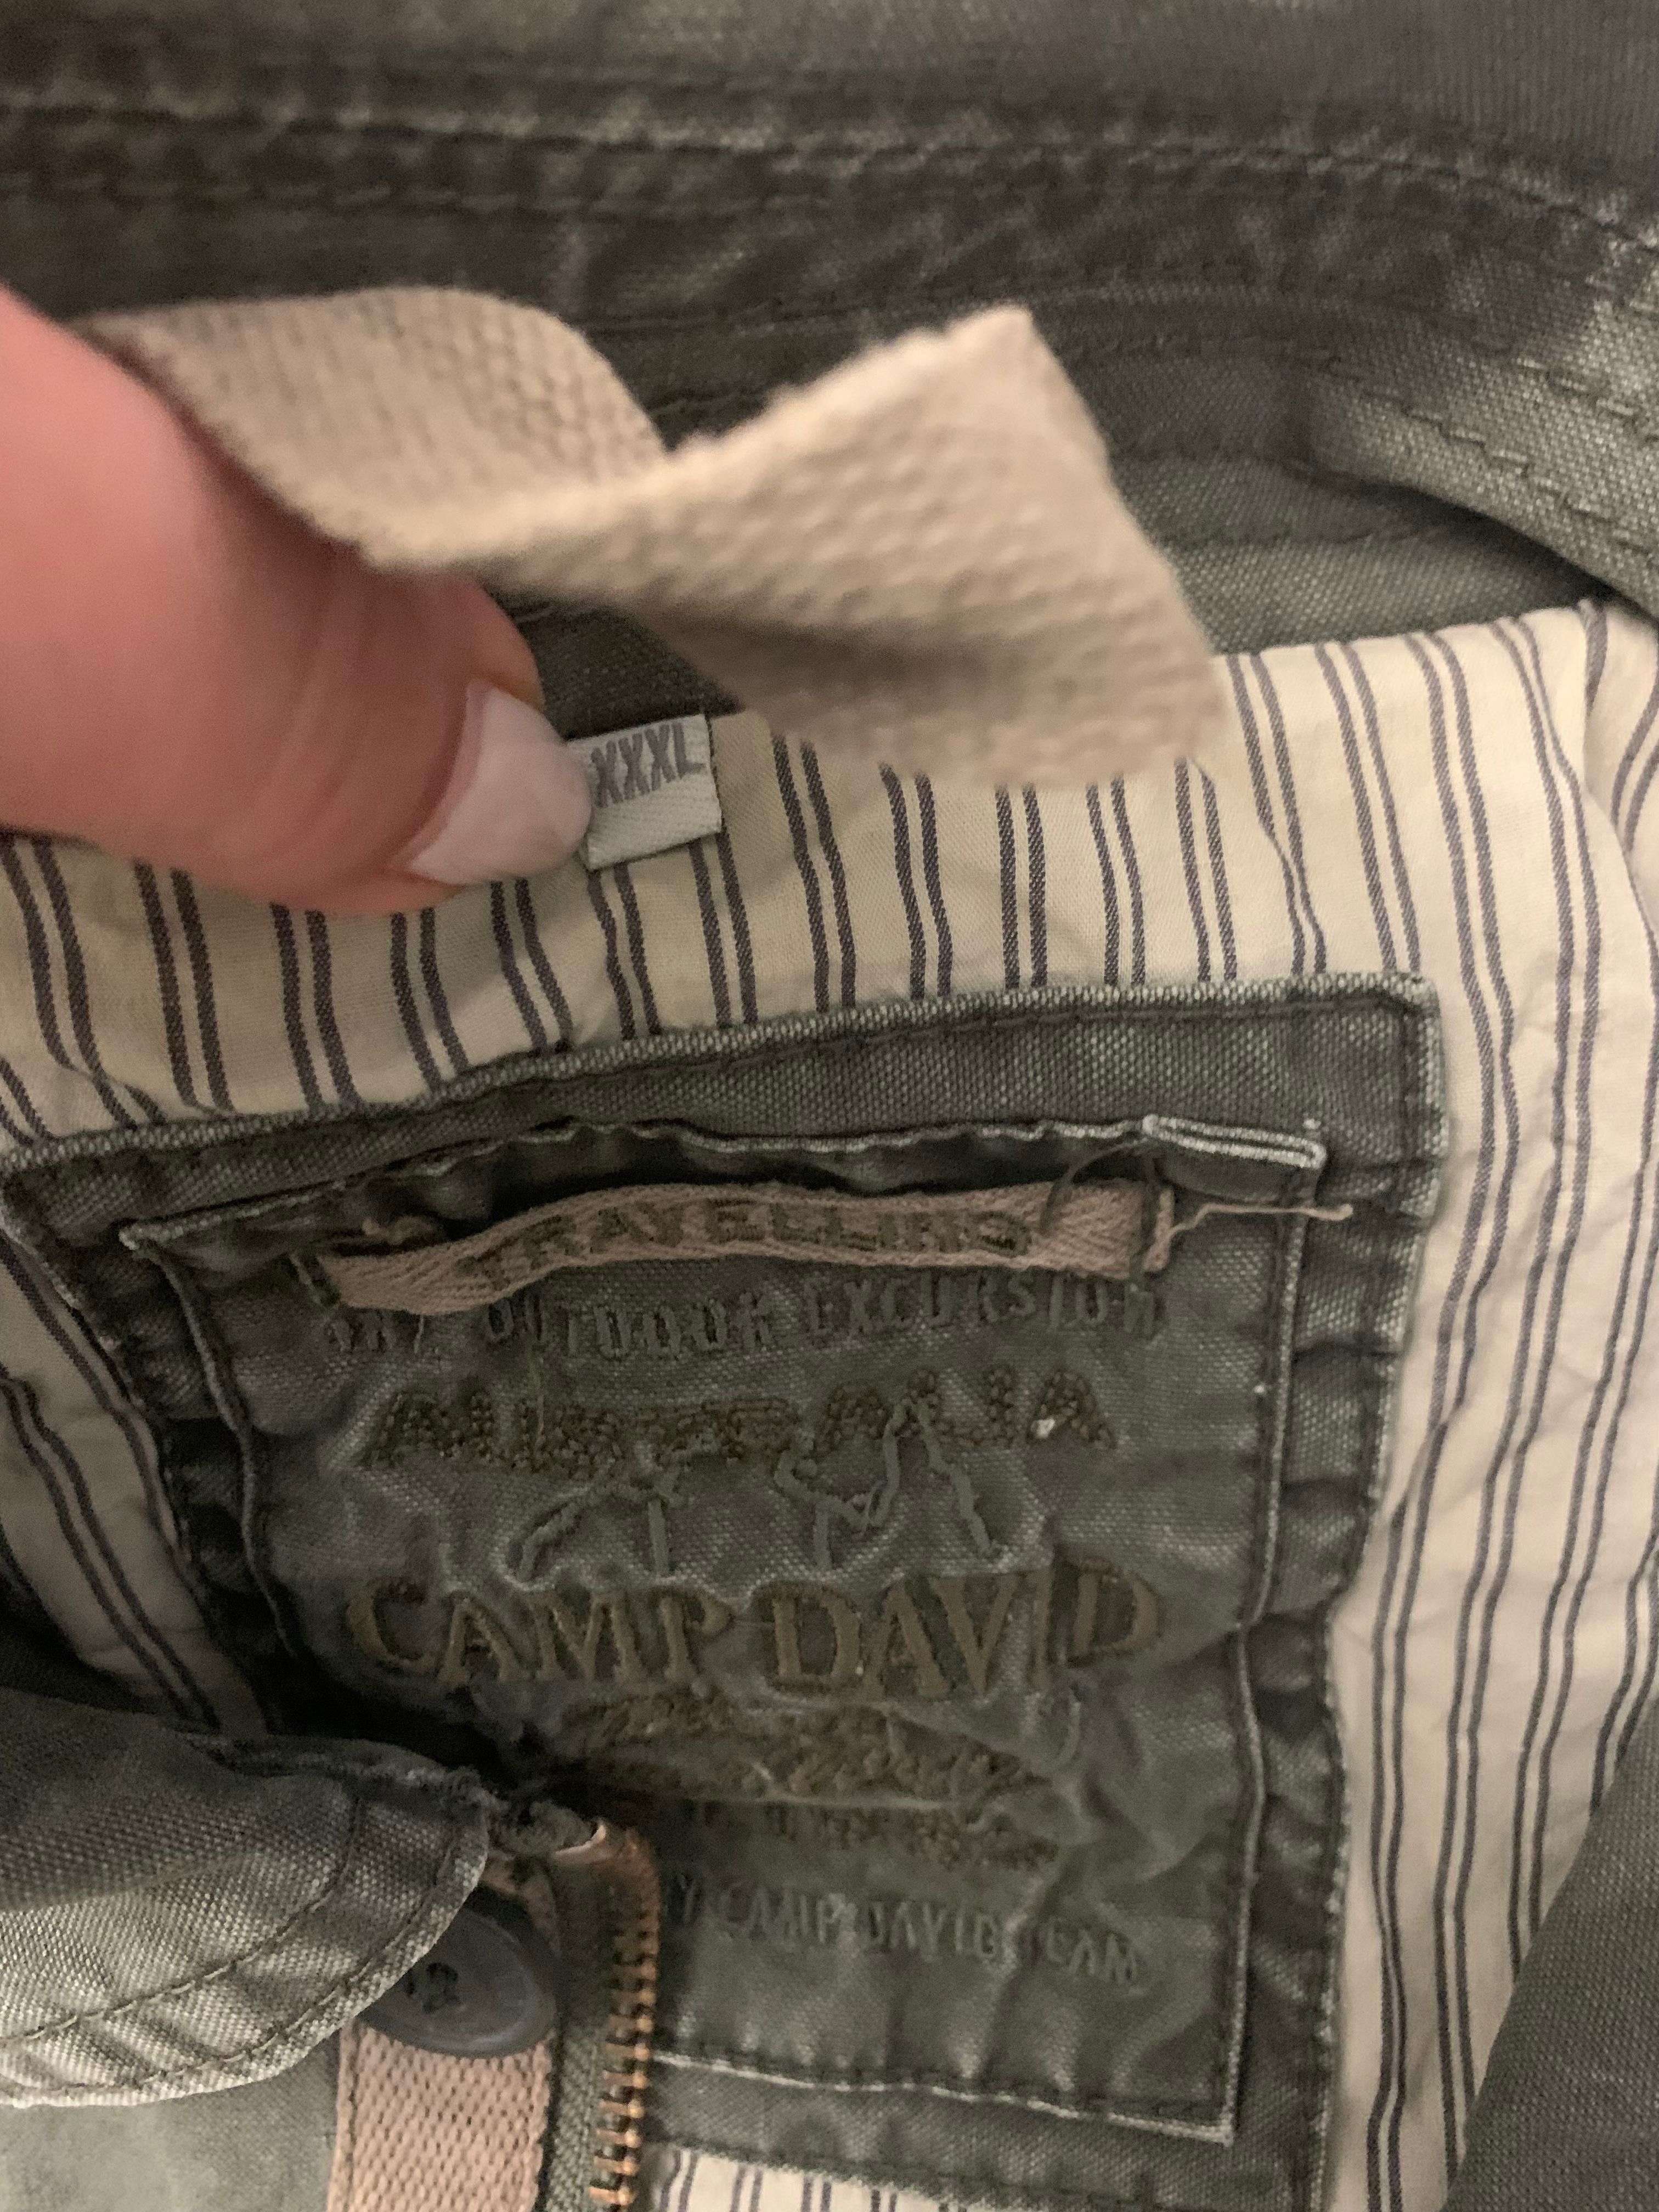 Camp David militarna kurtka męska jeans XXXL, khaki, logowana, pagony